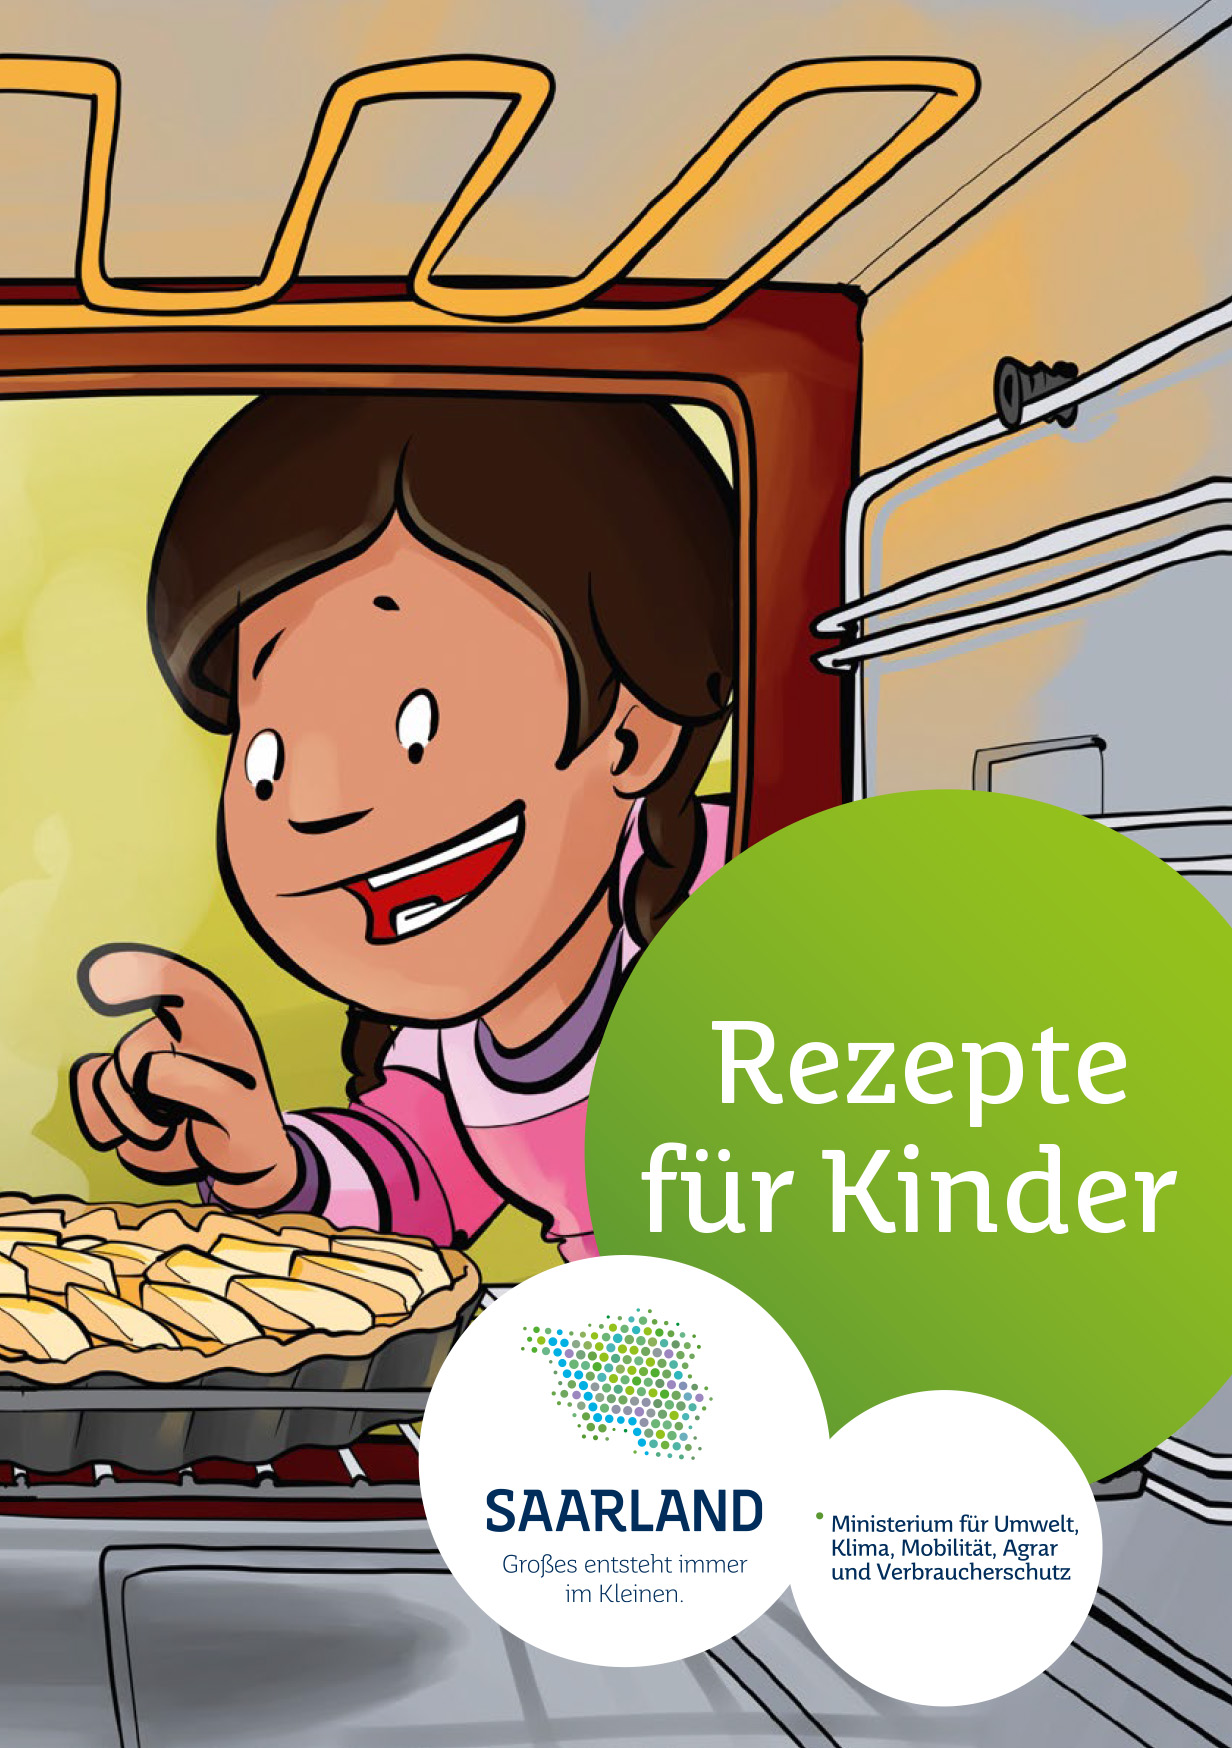 Das Bild zeigt die Titelseite der Broschüre "Rezepte für Kinder".